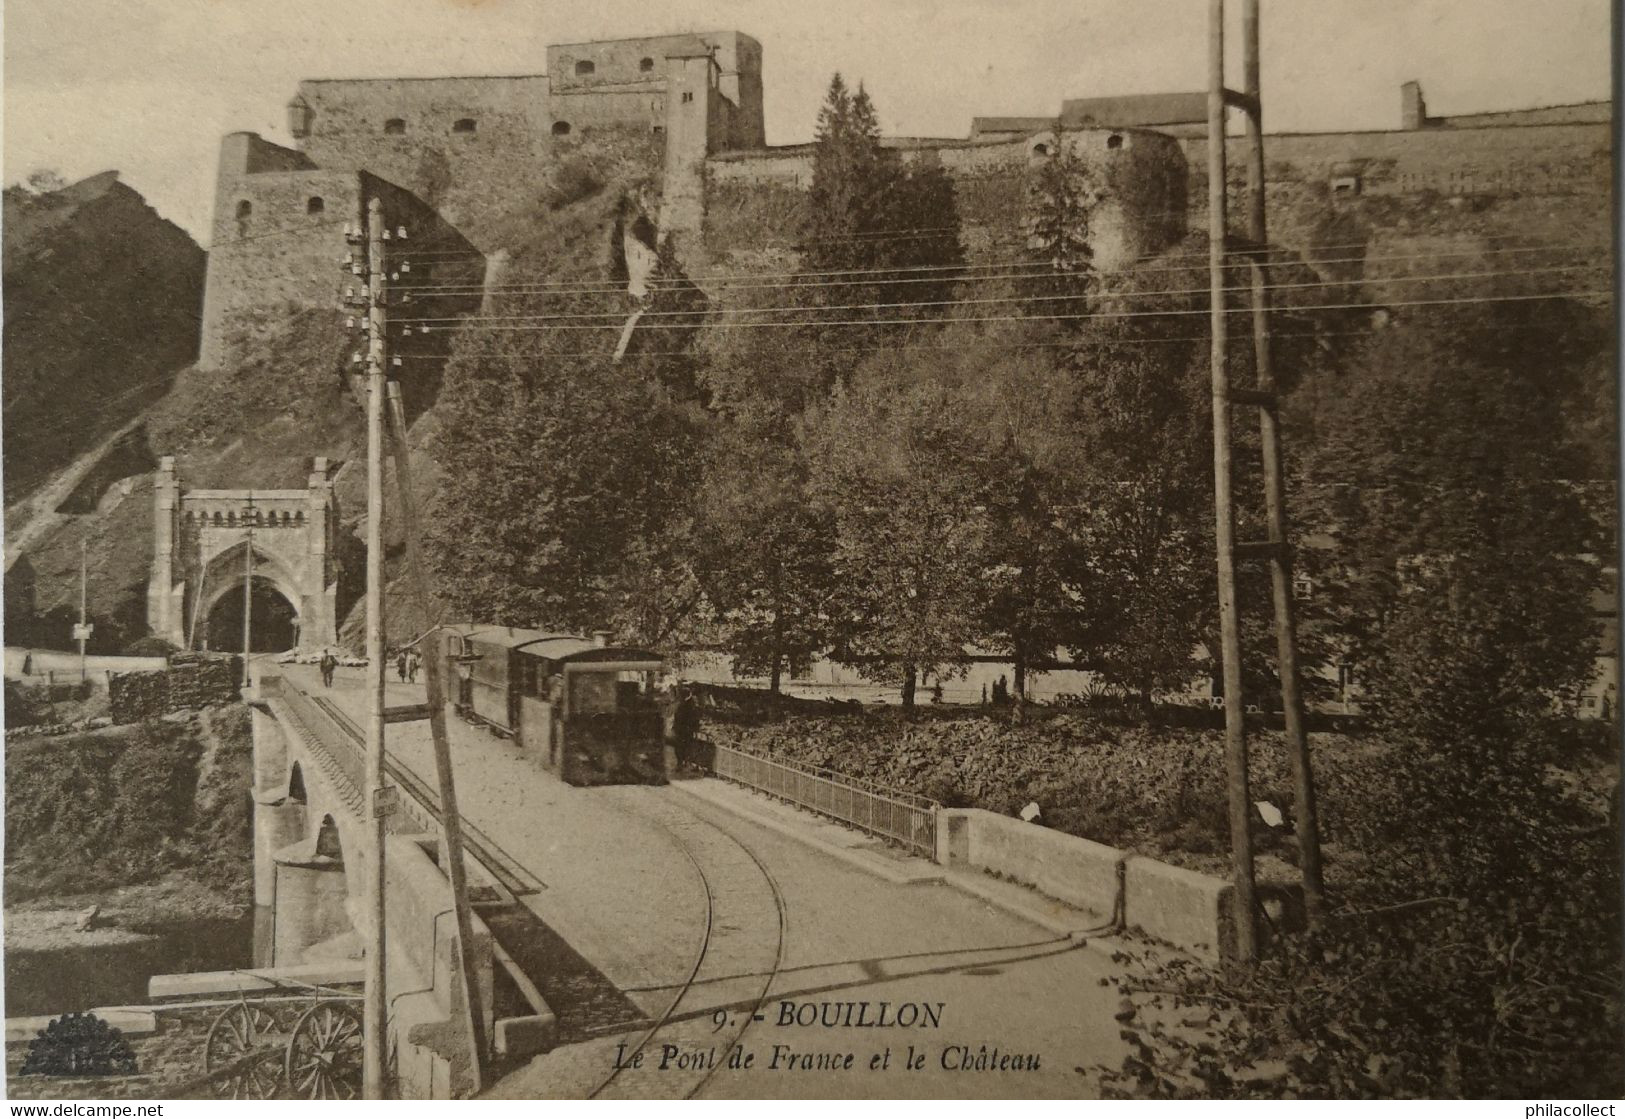 Bouillon // Le Pont De France Et Le Chateau - Tunnel Avec Tram Vapeur (Stoomtram) 19?? Ed Henri Georges  9 - Bouillon